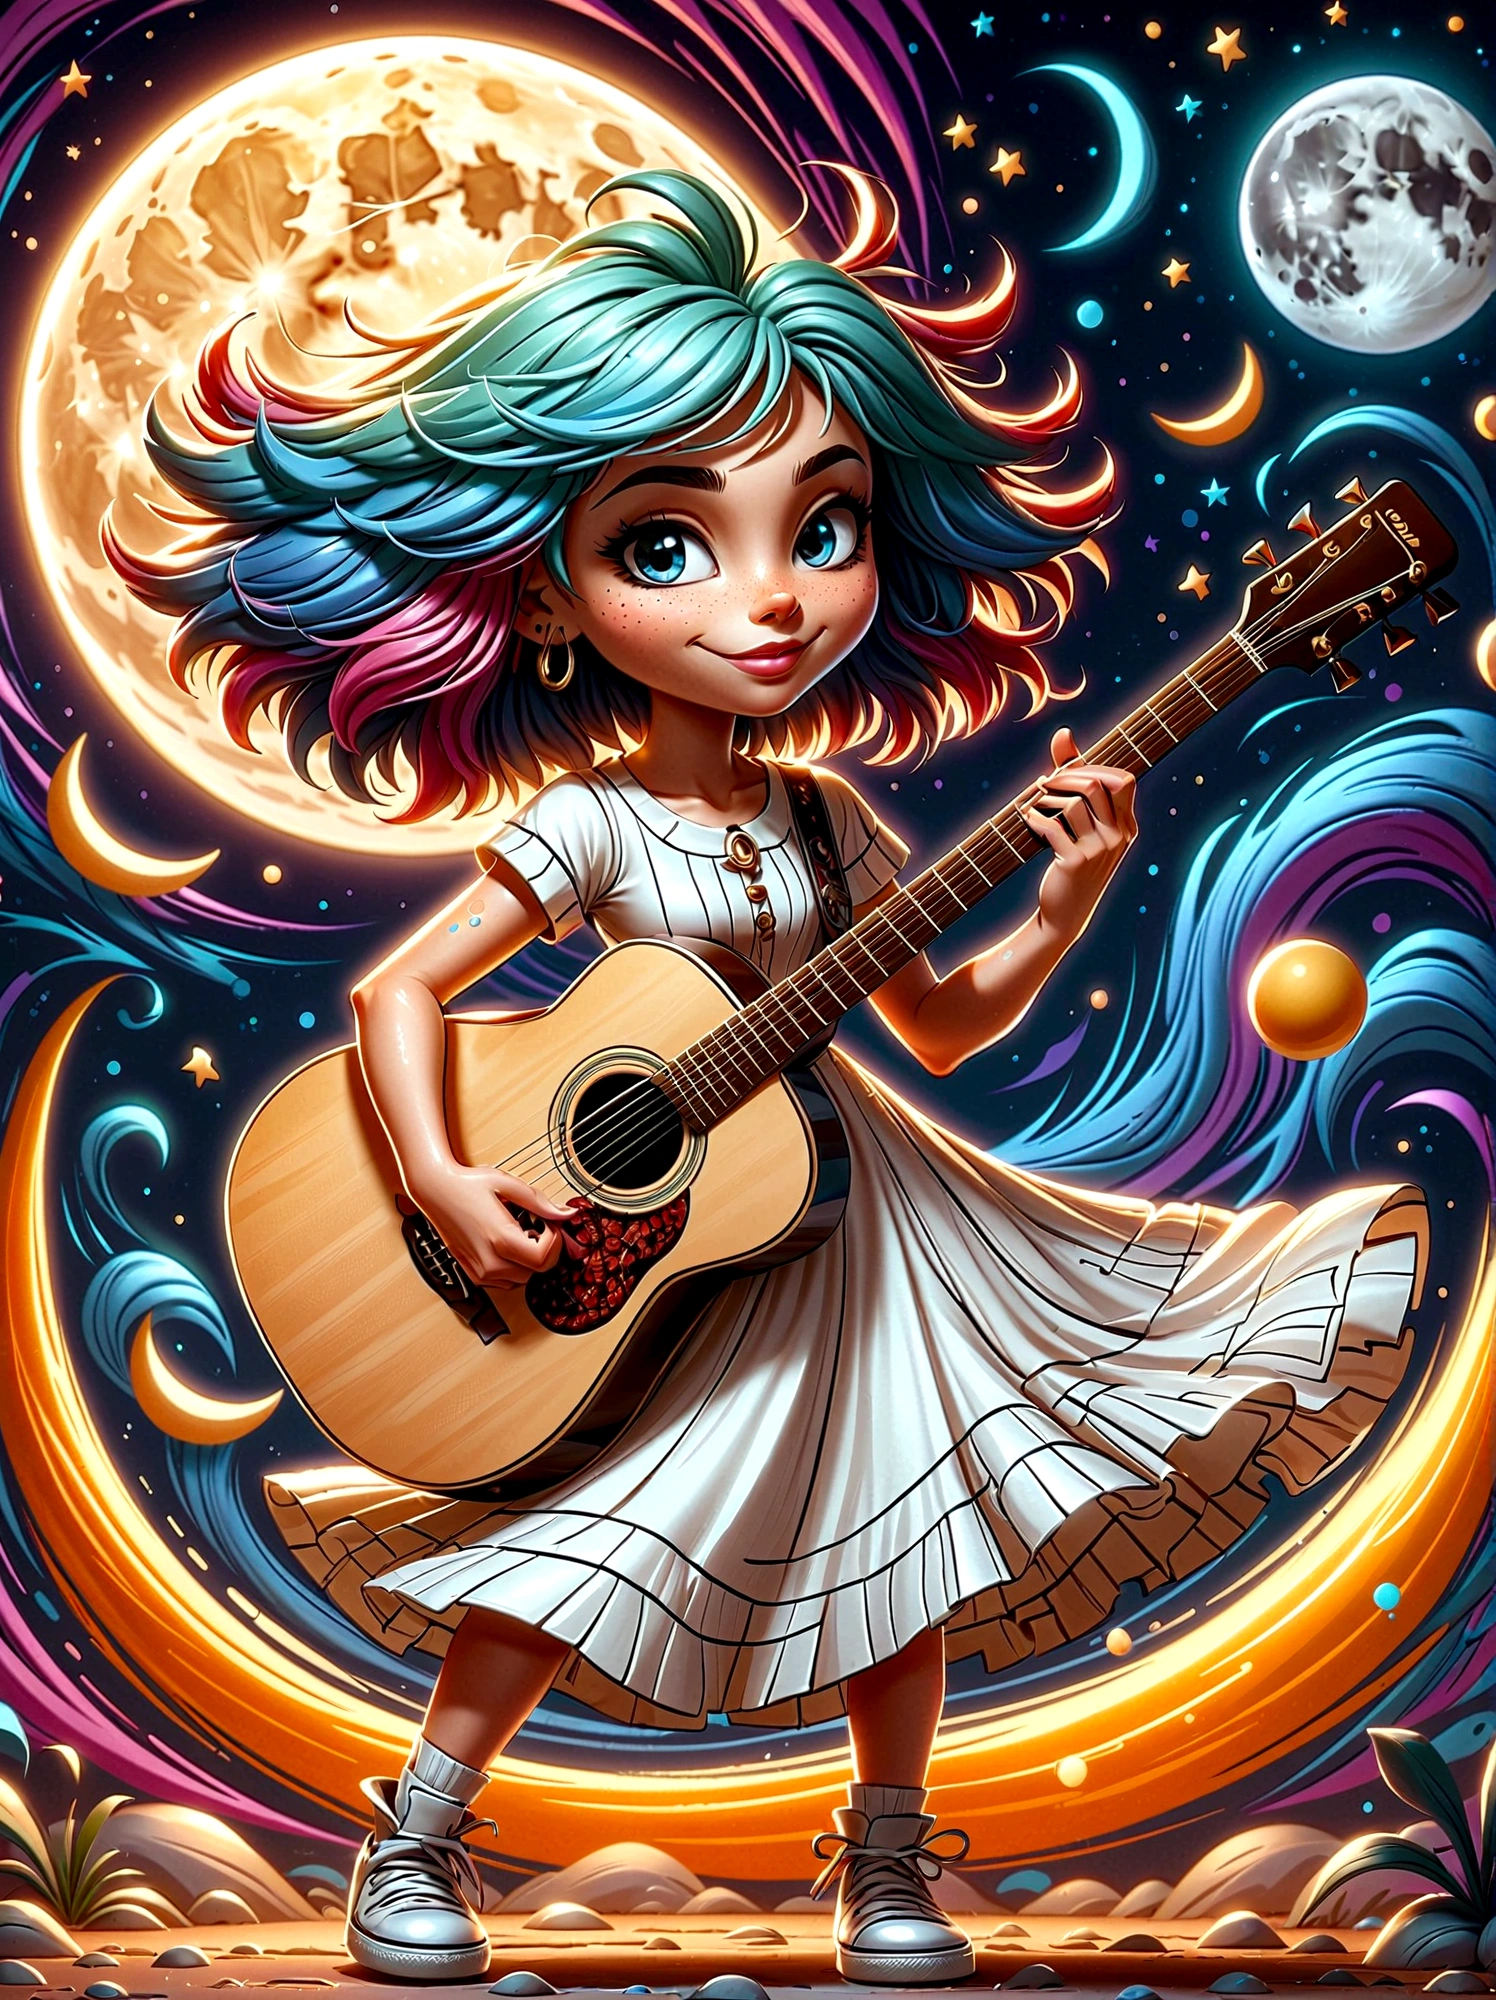 Персонаж мультфильма-каракули，Векторная иллюстрация，1 девушка，Один，гитарист，С ярко окрашенными волосами，Девушка изящно танцует в белом длинном платье.，В сюрреалистическом и мечтательном небе，Она стояла на полумесяце，Сохранение баланса при игре на гитаре，Рендеринг, показывающий плавящиеся элементы，Кажется, что элементы капают и плавно деформируются.，Использование цифрового стиля должно запечатлеть сцену.，Как видно с помощью техники длинной выдержки，Создайте ощущение непрерывного движения и перемен.，Сцена загадочная и неземная，Мягкий лунный свет наполняет окрестности，Написано мягкими мазками кисти.，Источайте чувство прихоти и очарования в этой лунной фантазии.，анатомически правильный，Текстурированная кожа，Стоя перед фоном в стиле граффити，Добавьте прихоти в сцену，1xhsn1